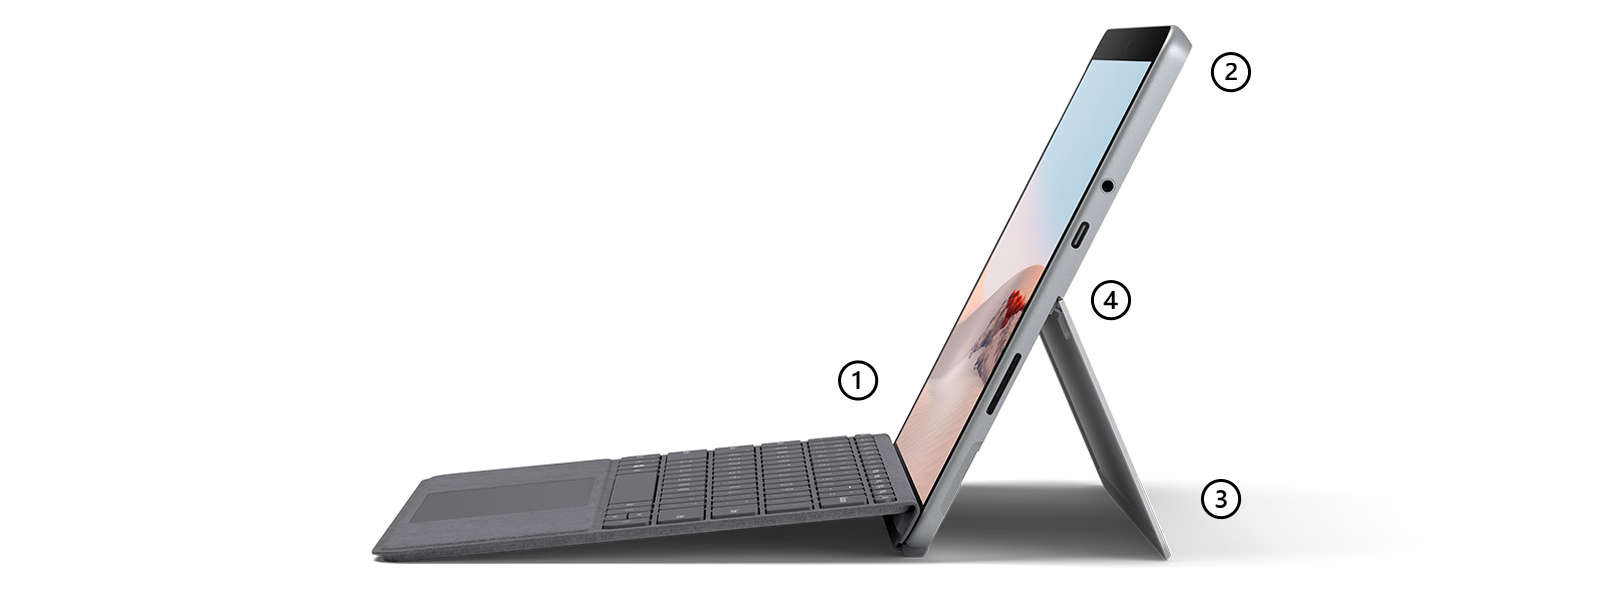 帶有 Surface Go 特制版專業鍵盤蓋（亮鉑金）的筆記本模式的 Surface @P1，重點突出支持觸控筆的觸控屏、麥克風和攝像頭、一體式支架以及 USB-C 端口。